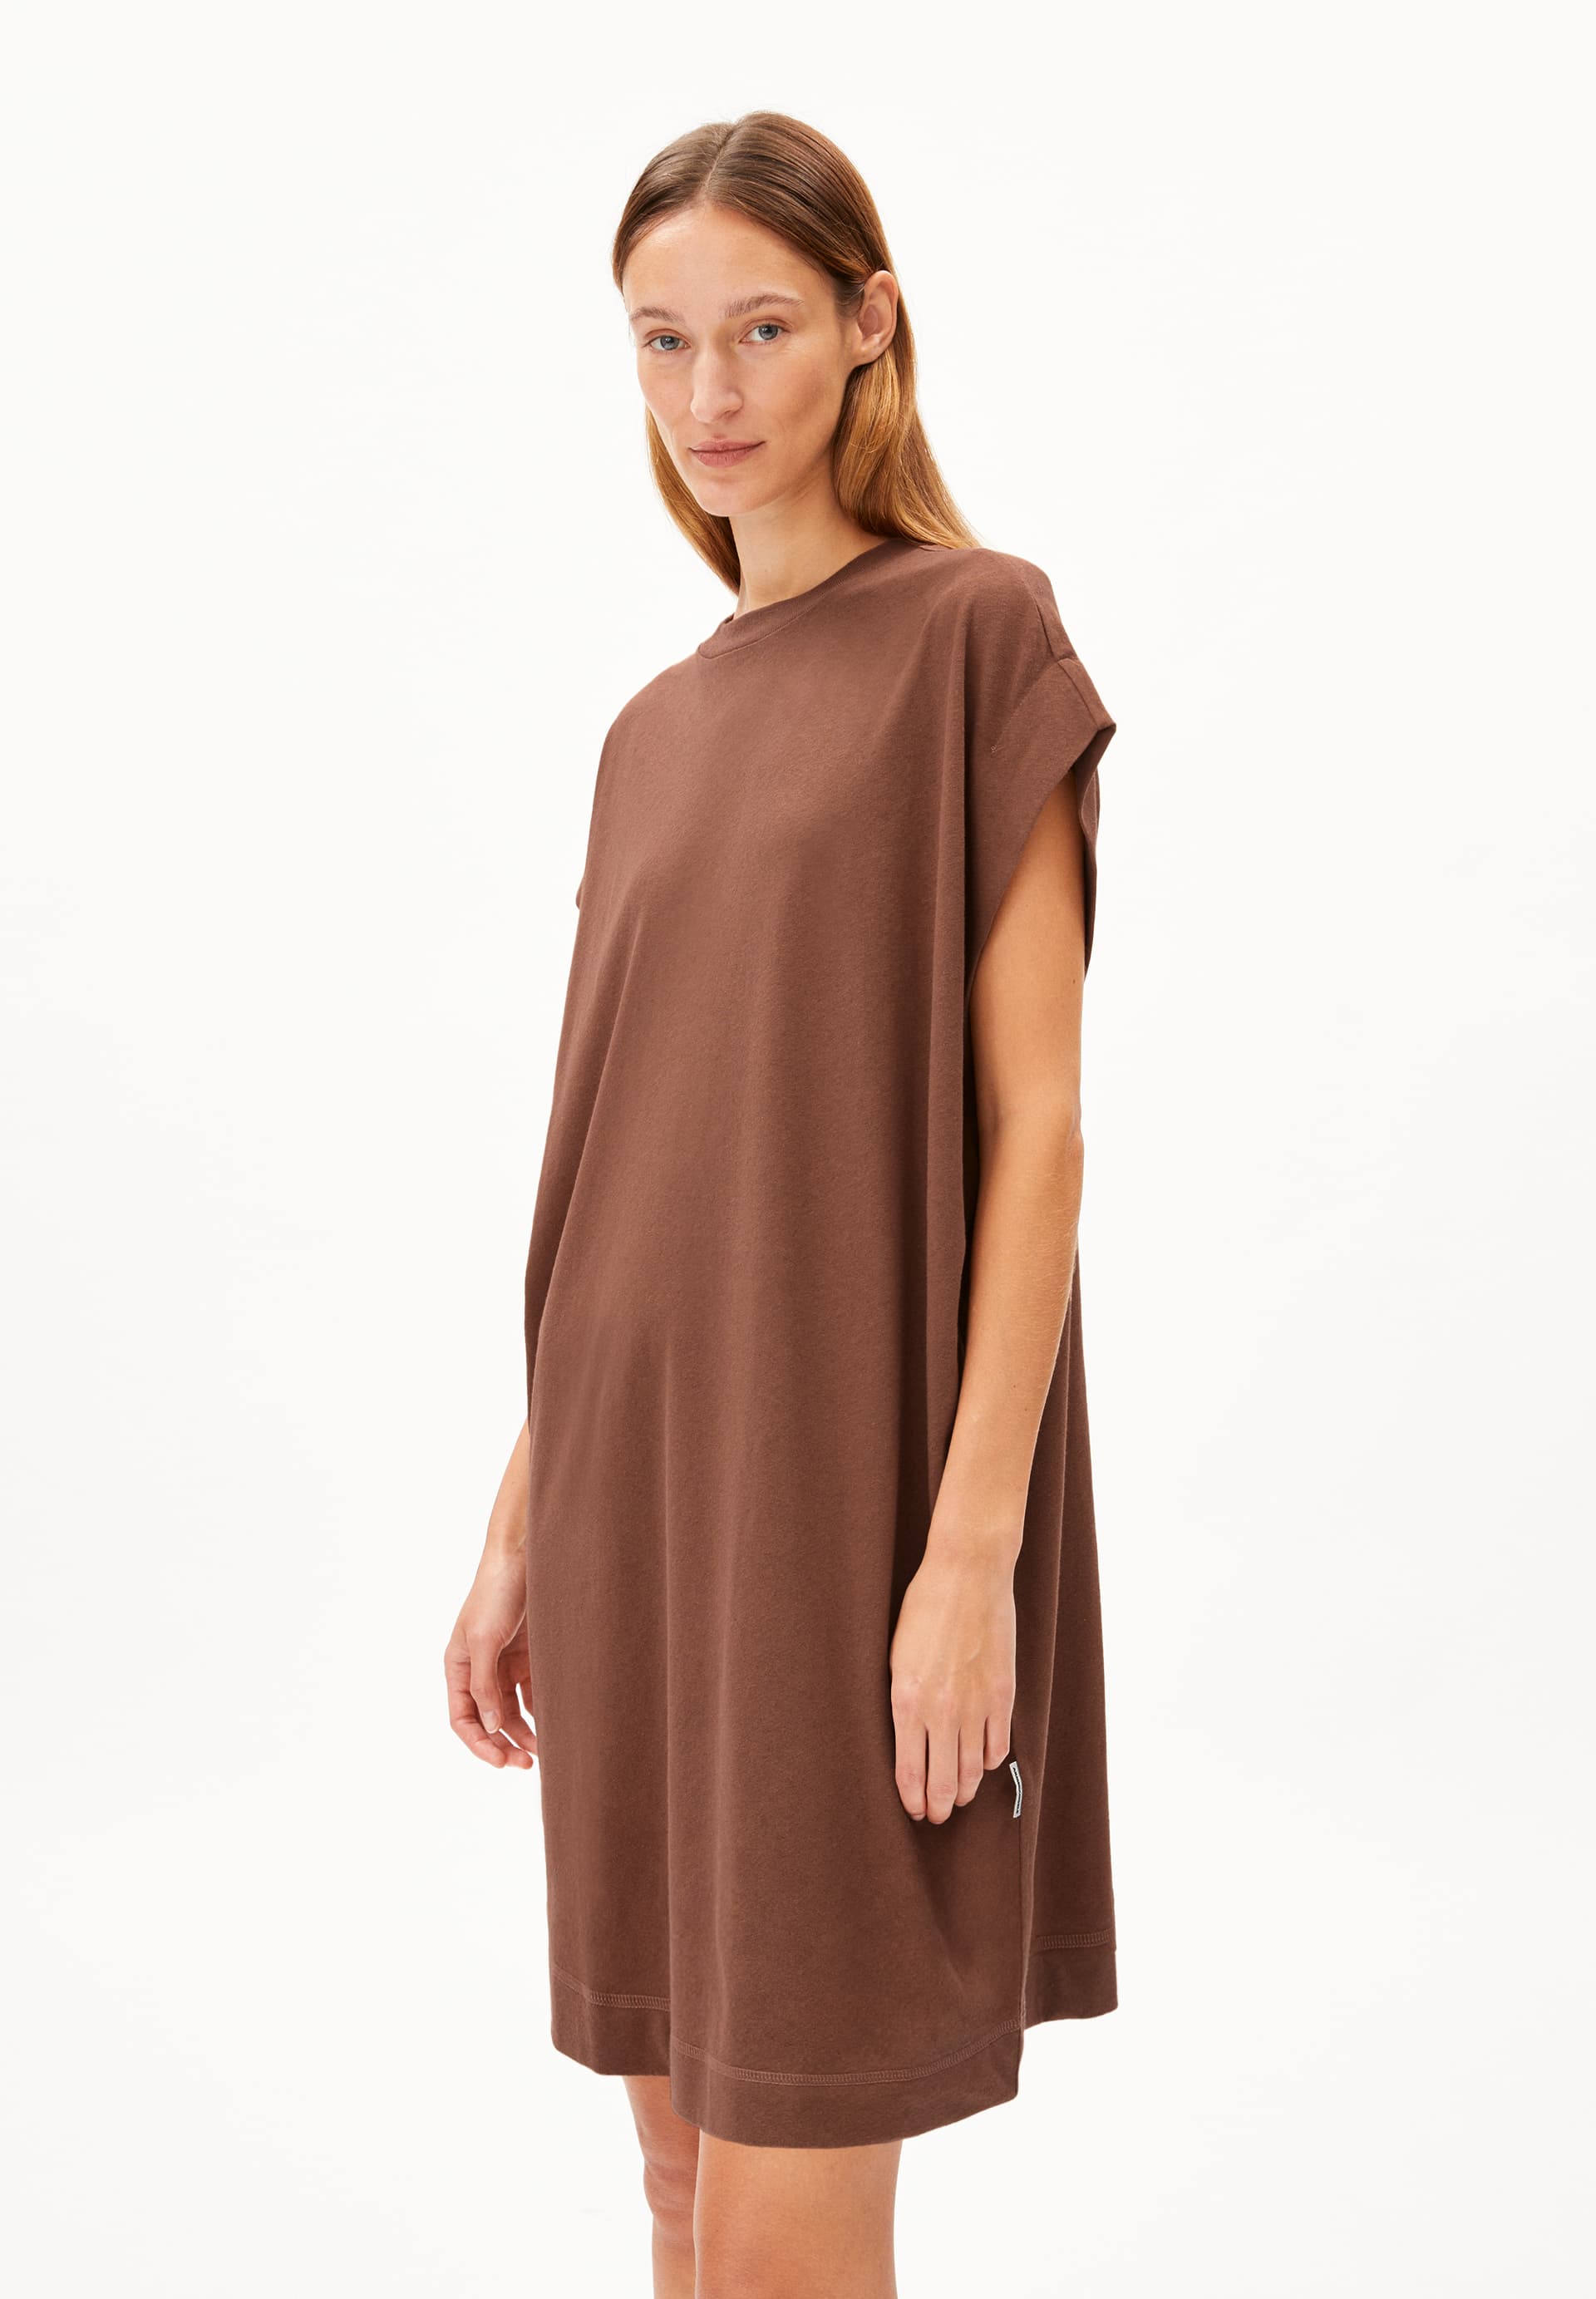 DAARIXA LINEN Jersey Dress Oversized Fit made of Linen-Mix